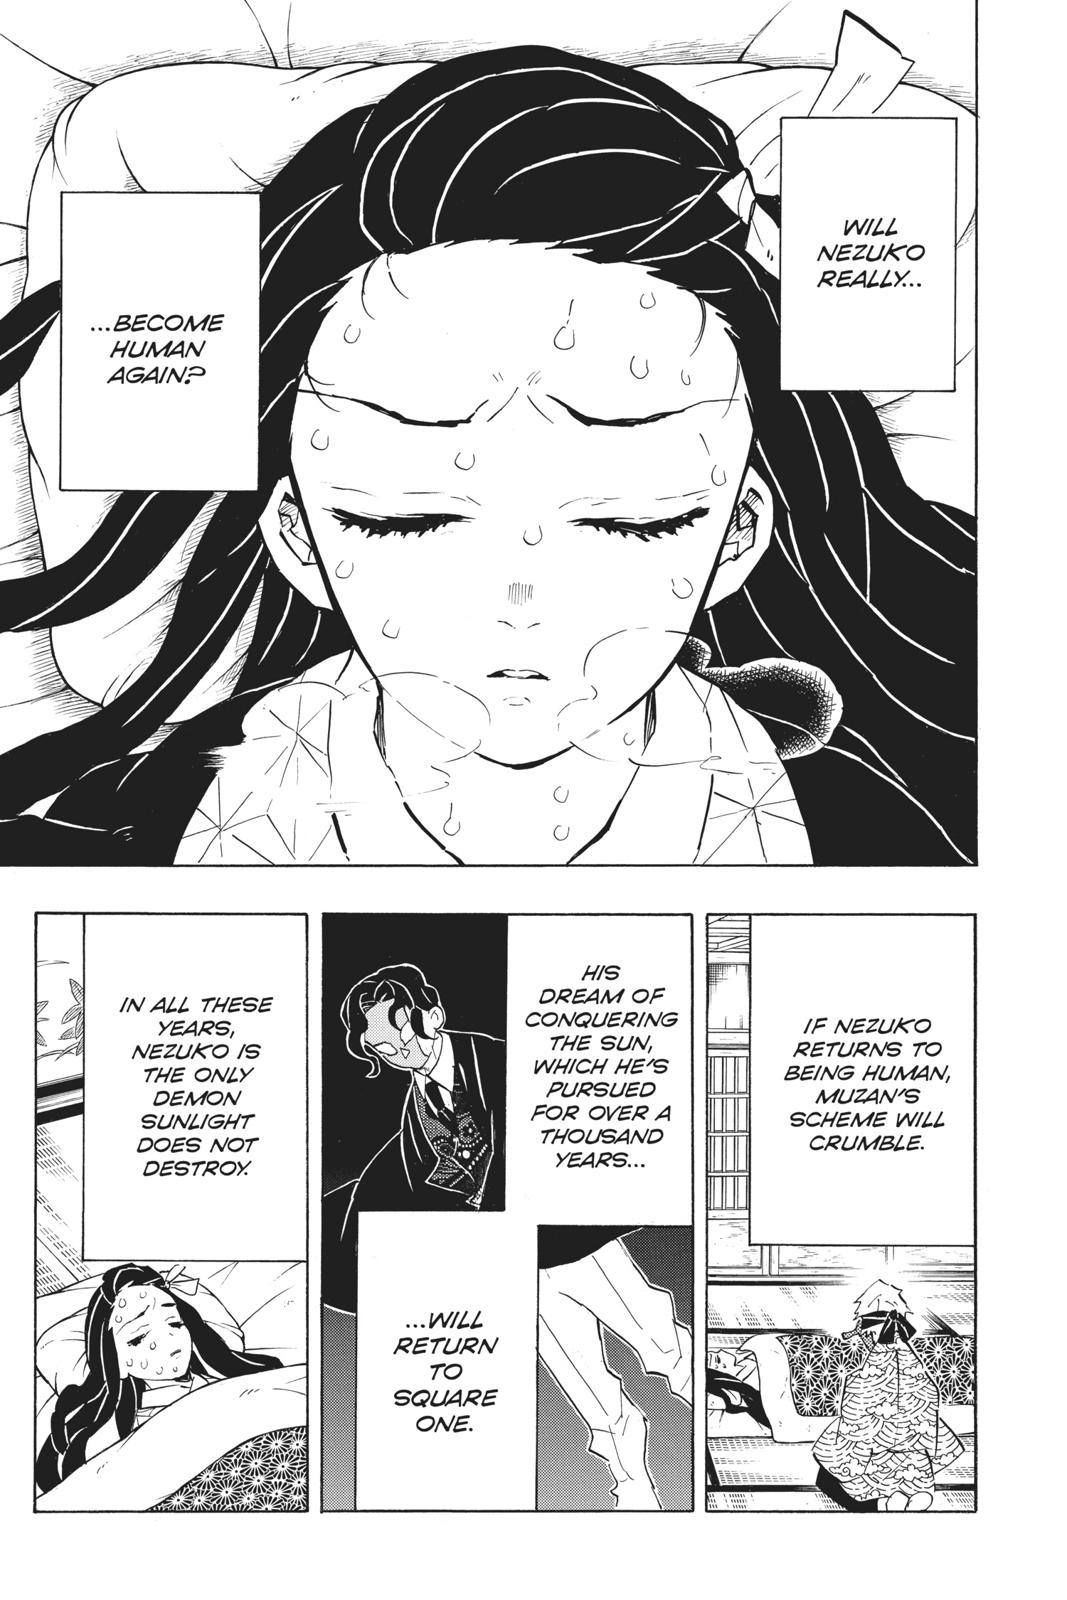 Demon Slayer Manga Manga Chapter - 147 - image 4